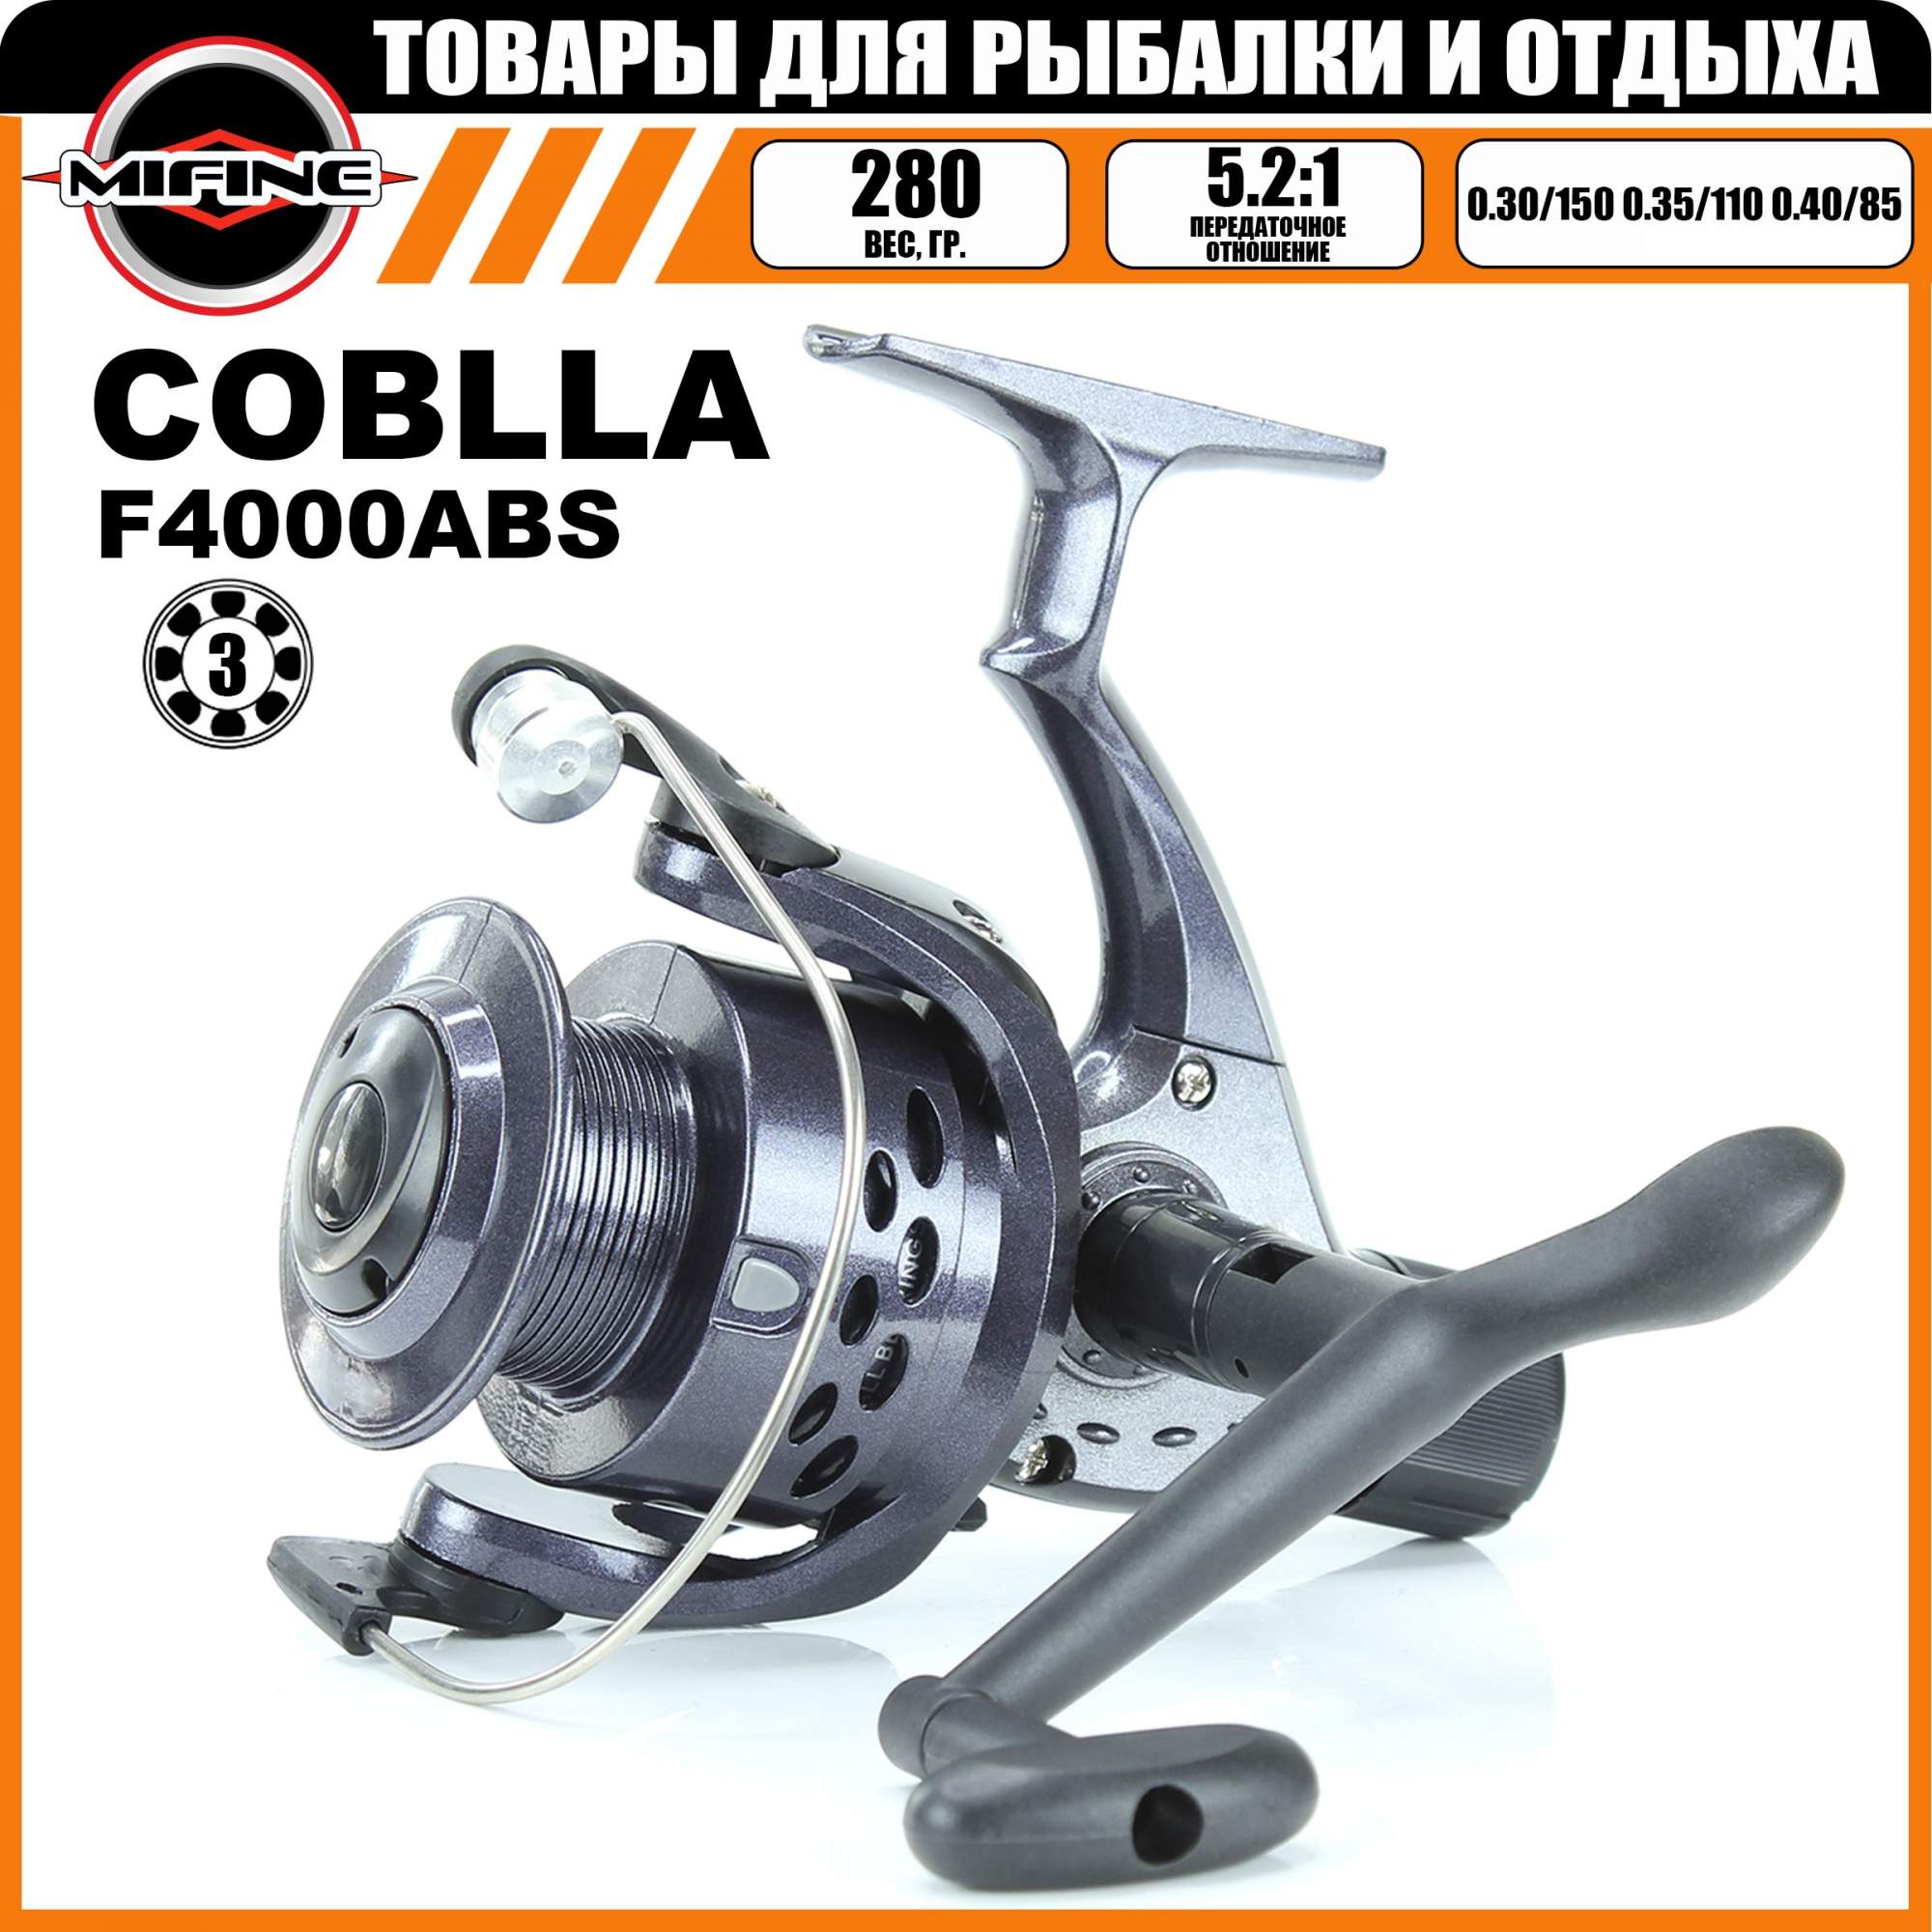 Катушка рыболовная с графитовой шпулей COBLLA CB340, 3 подшипника, для спиннинговой ловли - купить в Москве, цены на Мегамаркет | 600013240018